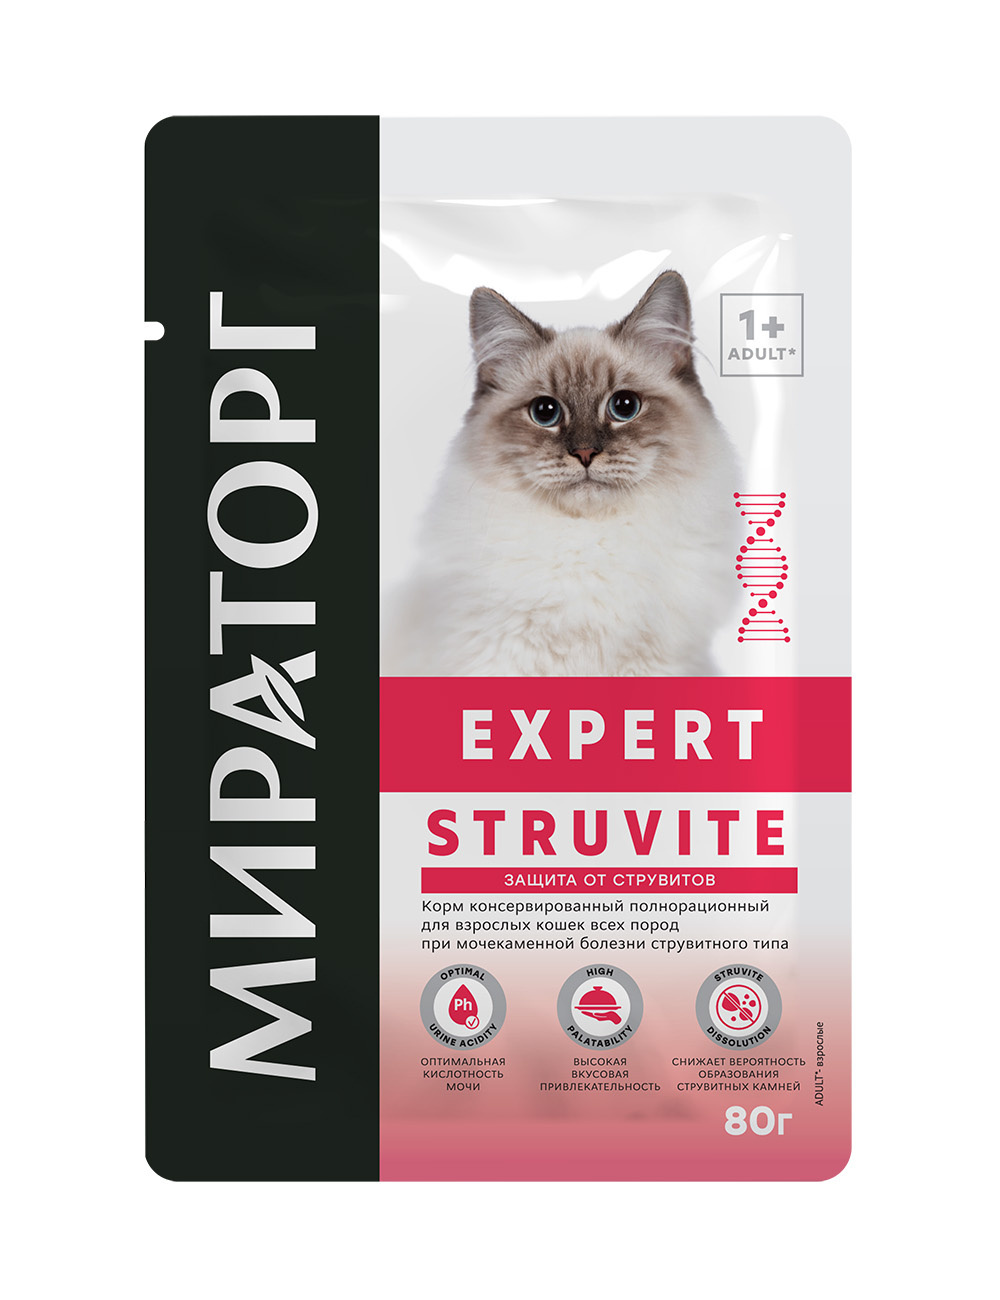 Мираторг вет. корма Мираторг вет. корма паучи для взрослых кошек всех пород при мочекаменной болезни струвитного типа (80 г)